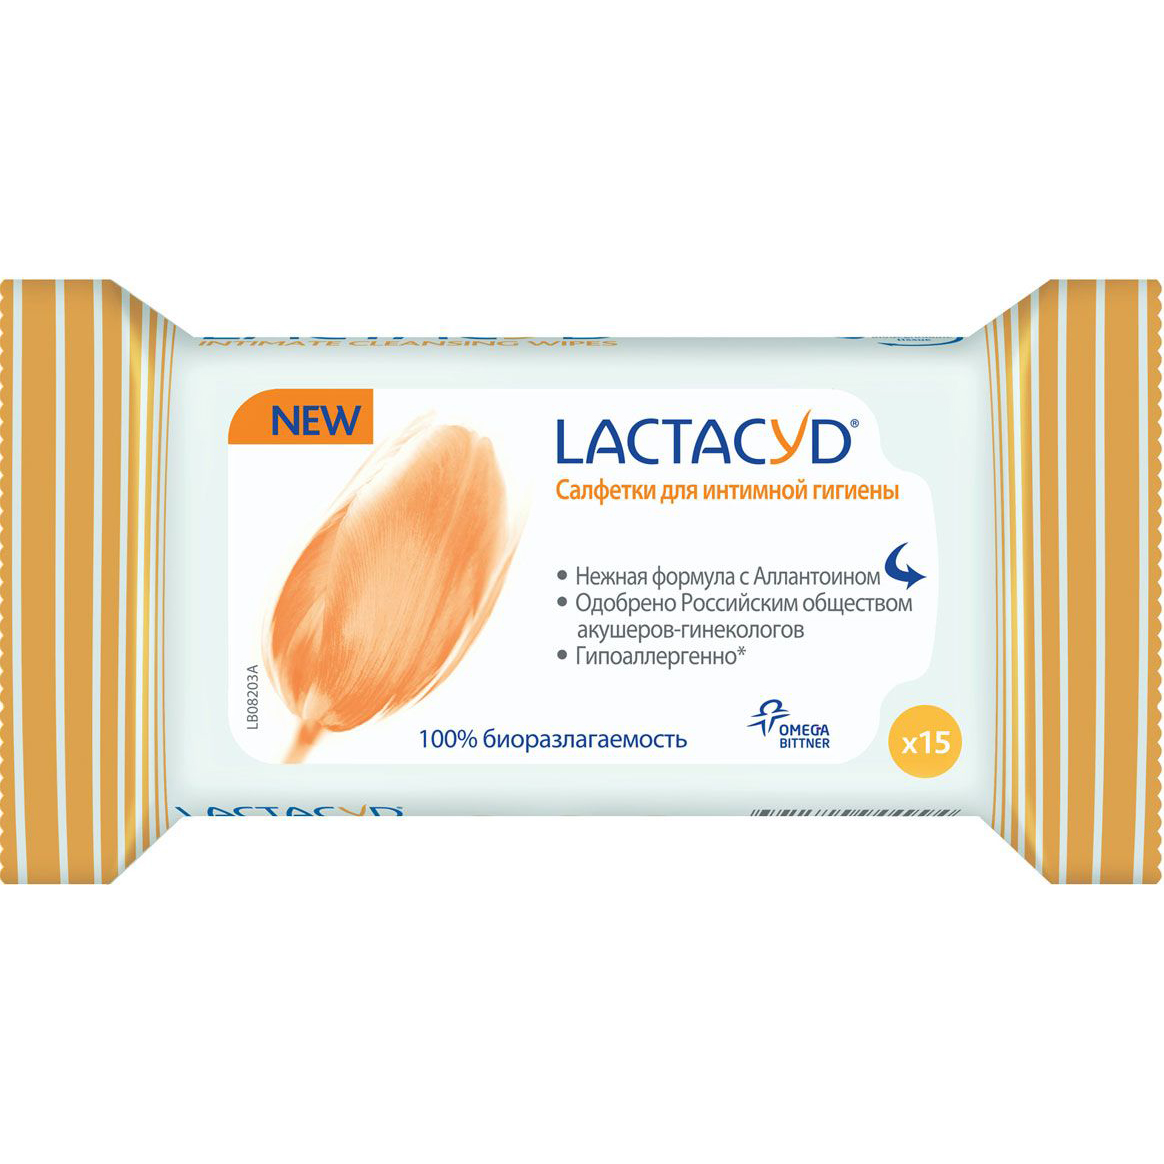 Салфетки для интимной гигиены Lactacyd 15 шт салфетки для интимной гигиены lactacyd 15 шт